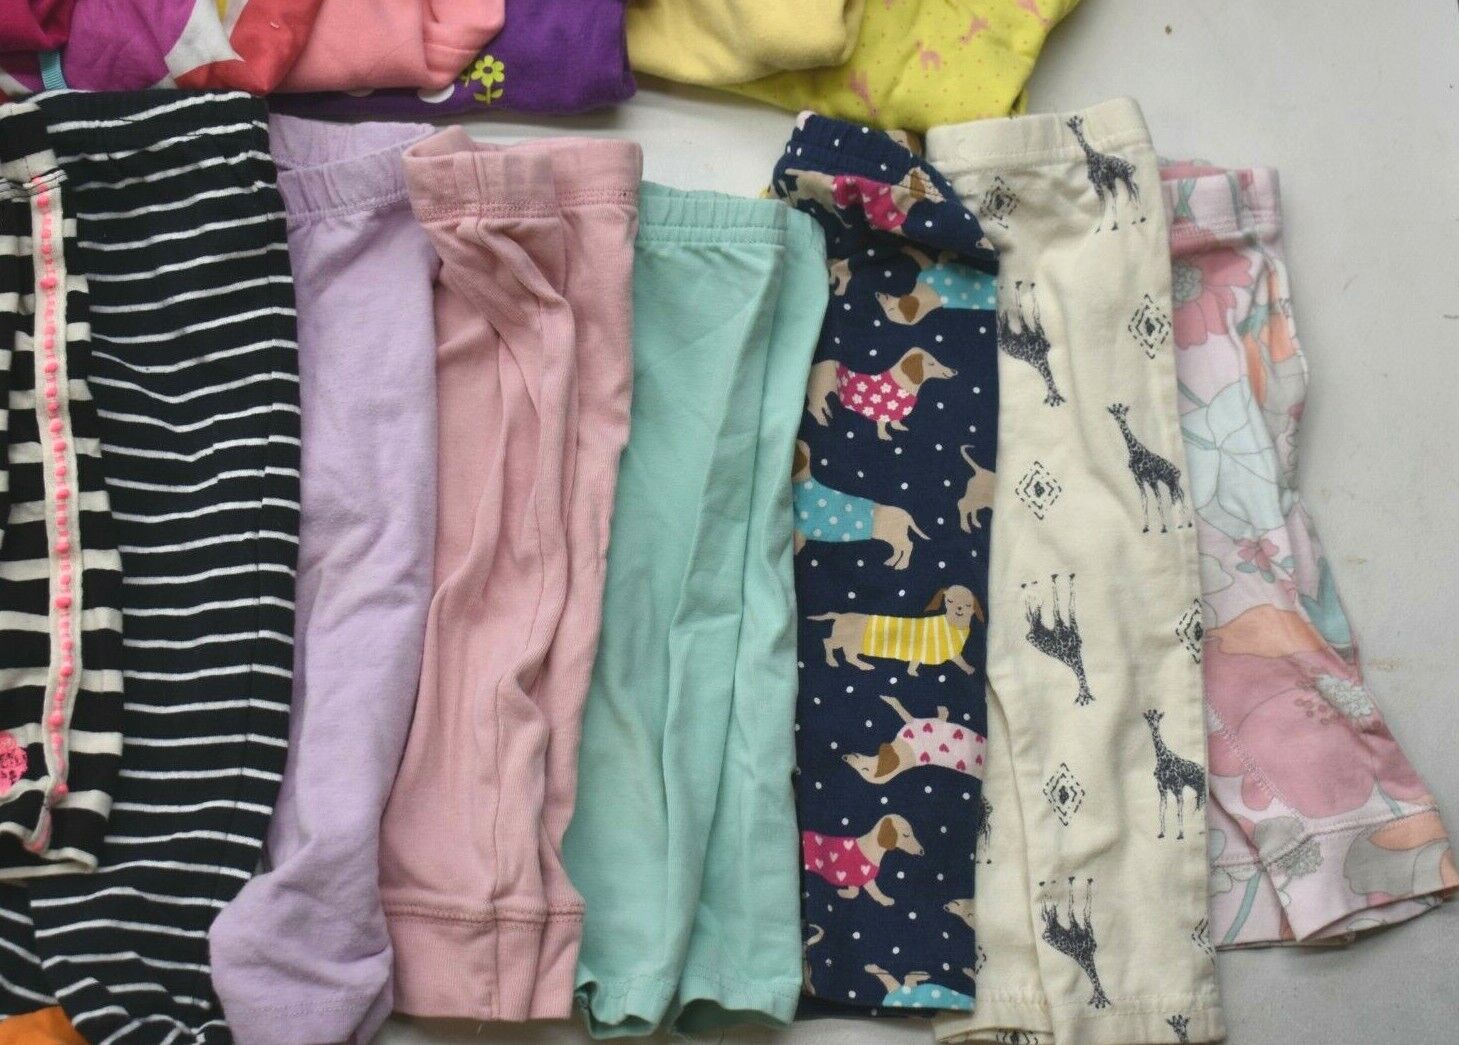 Wholesale Bulk Lot of 35 Girls Size 6-12 Mixed Season Pants Shirts Bottoms Mixed Brand - фотография #2